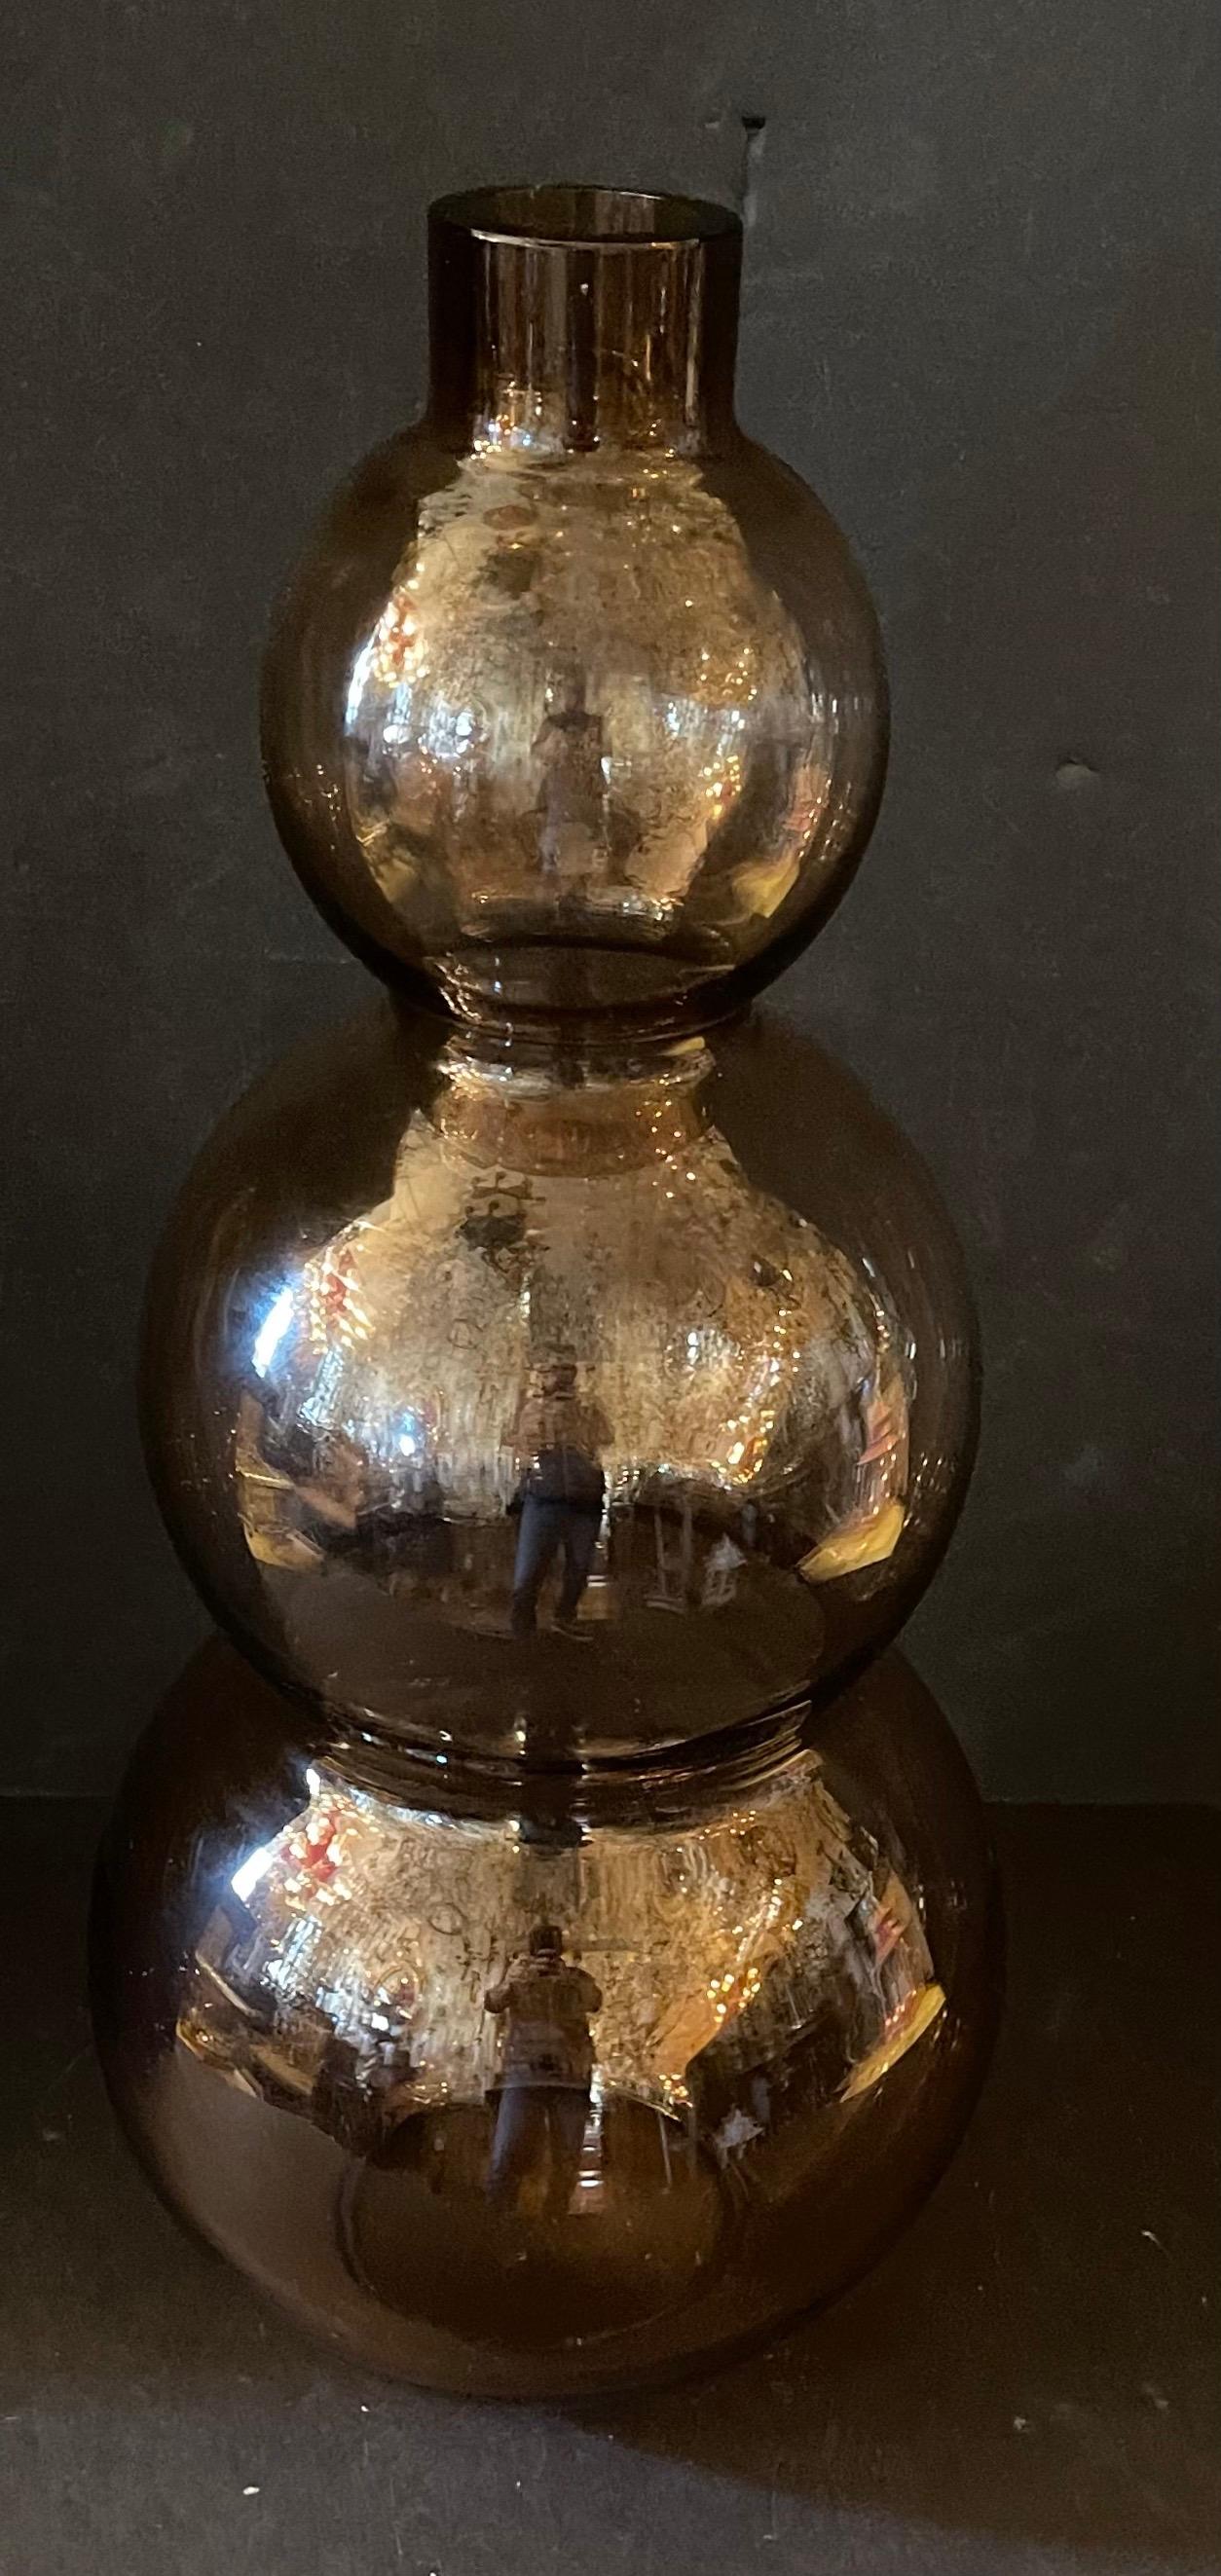 Magnifique vase à trois gourdes en verre d'art italien Cenedese de Lorin Marsh, gris fumée.
Dimensions : H 23